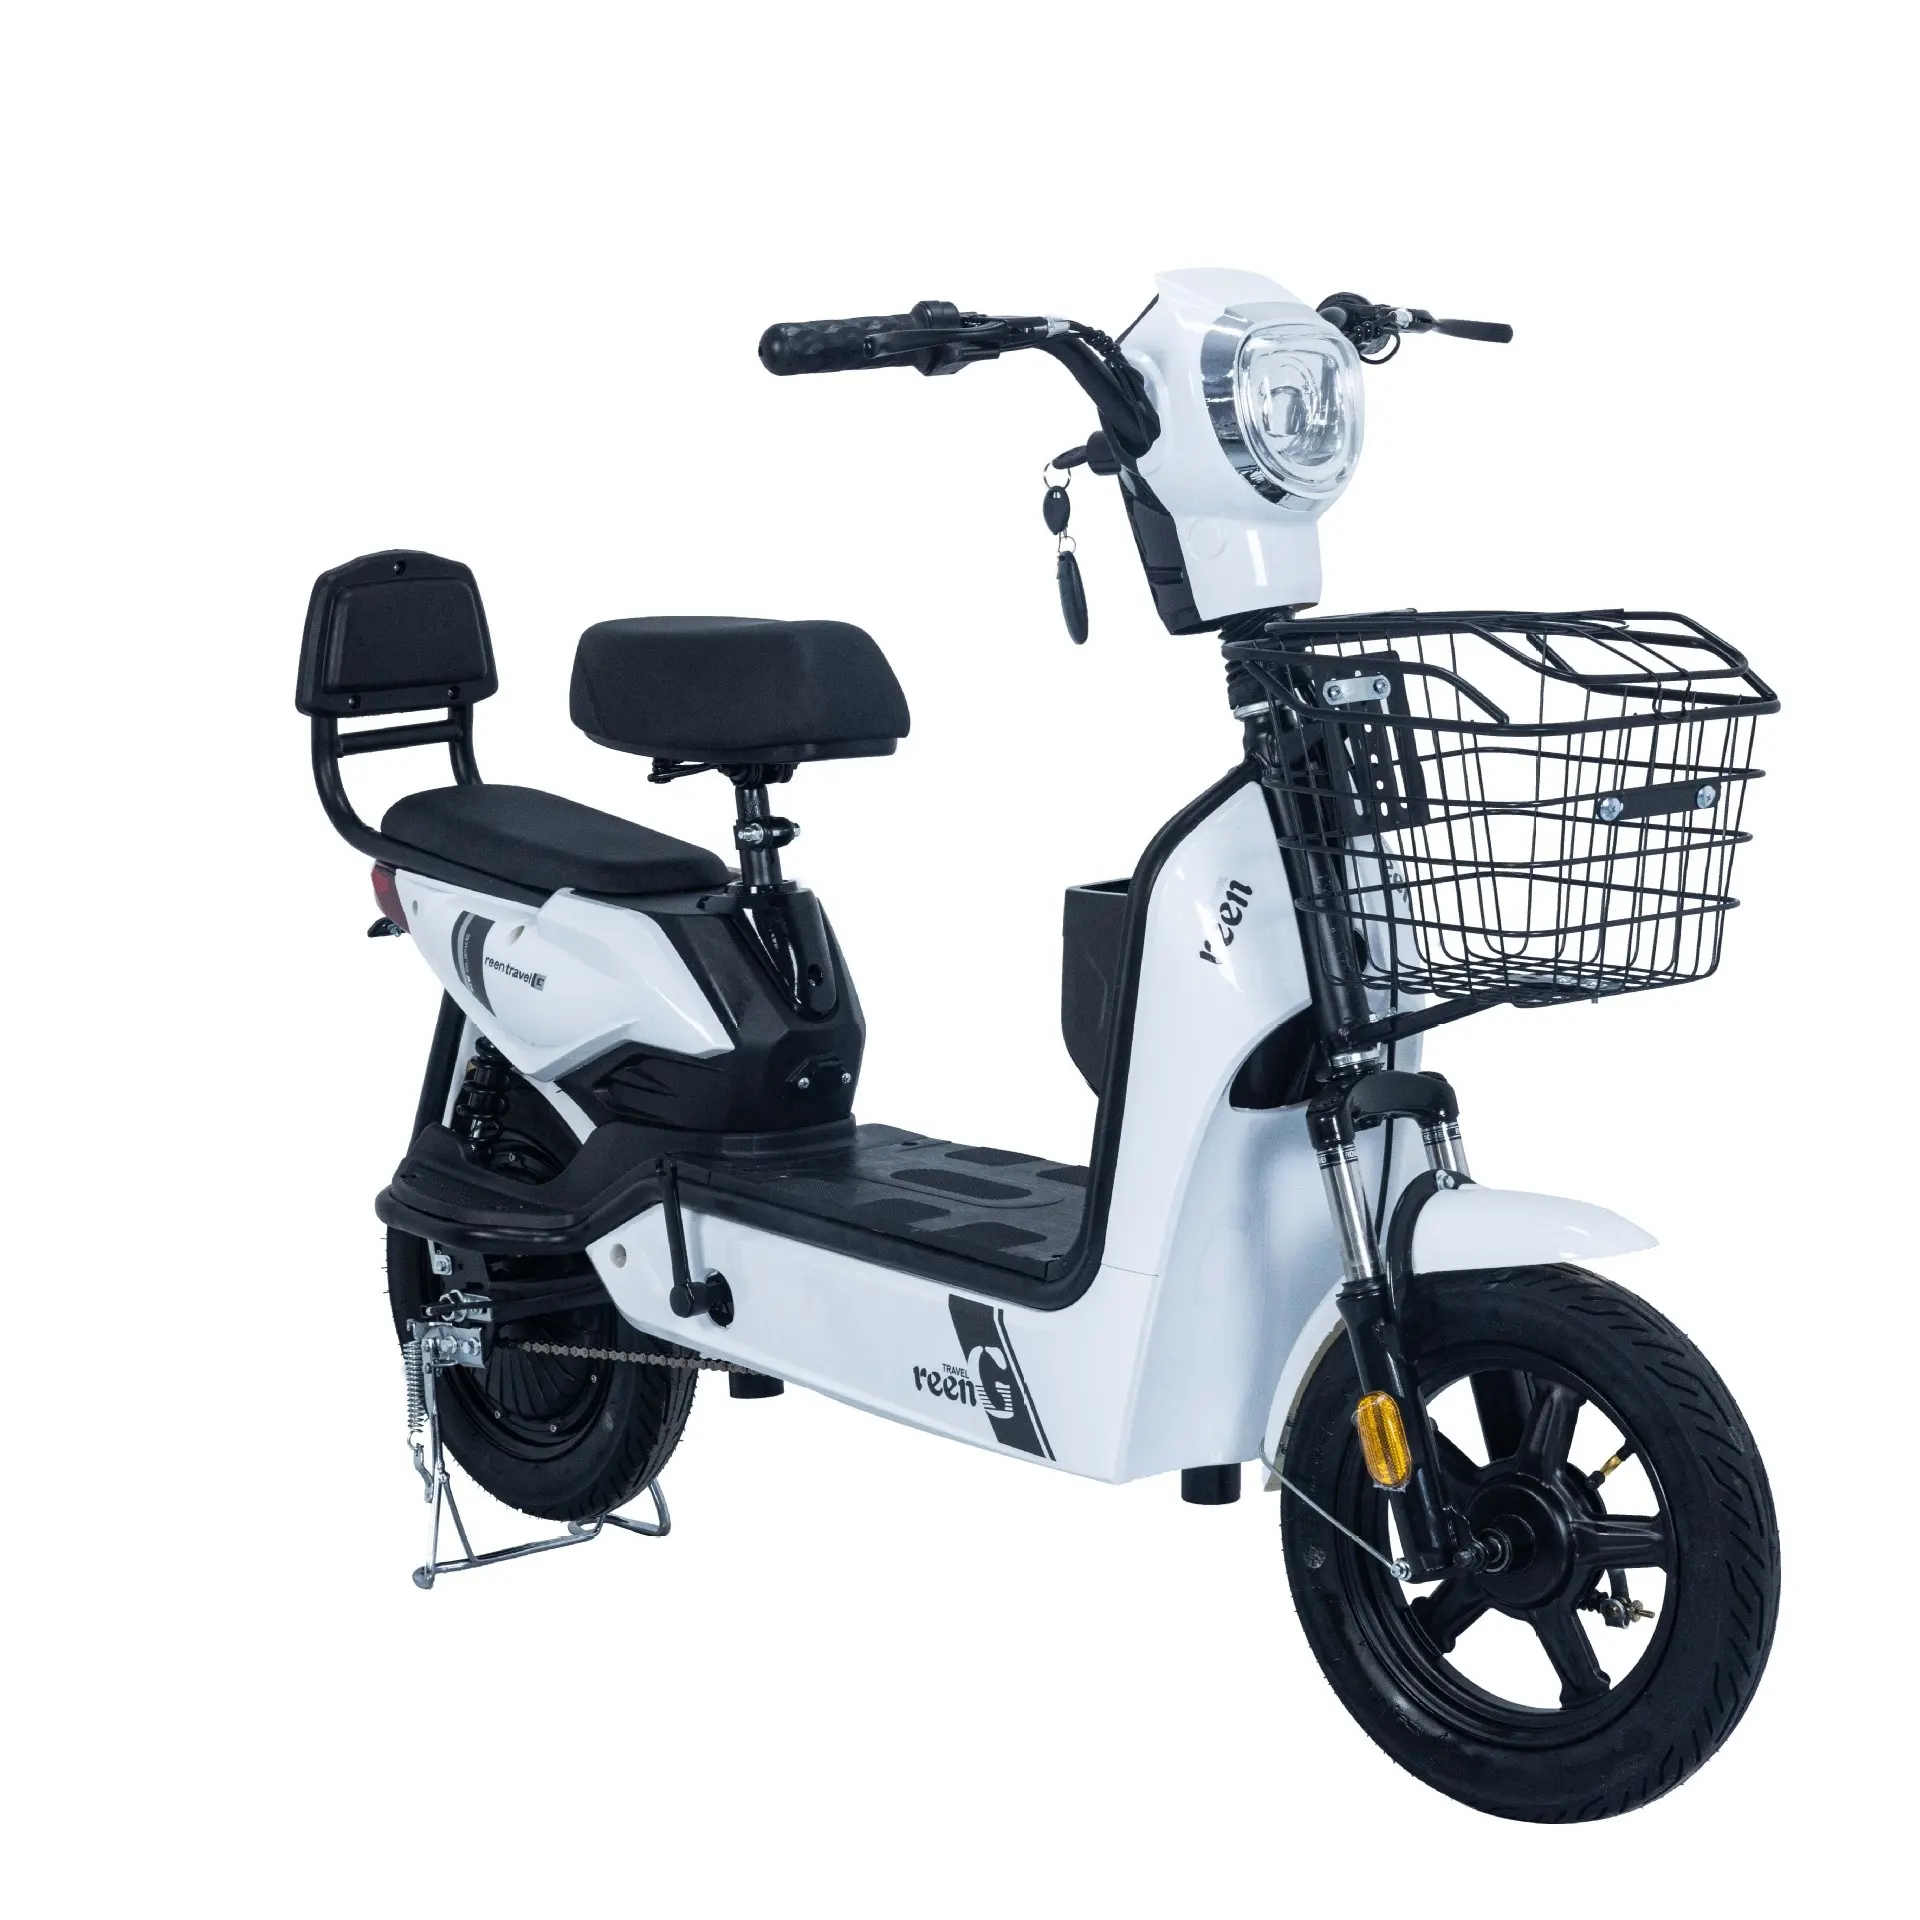 Новый дизайн, электрические мотоциклы, EEC COC Ev- Super Cub, электрический велосипед, электрический скутер, мопед, городской велосипед